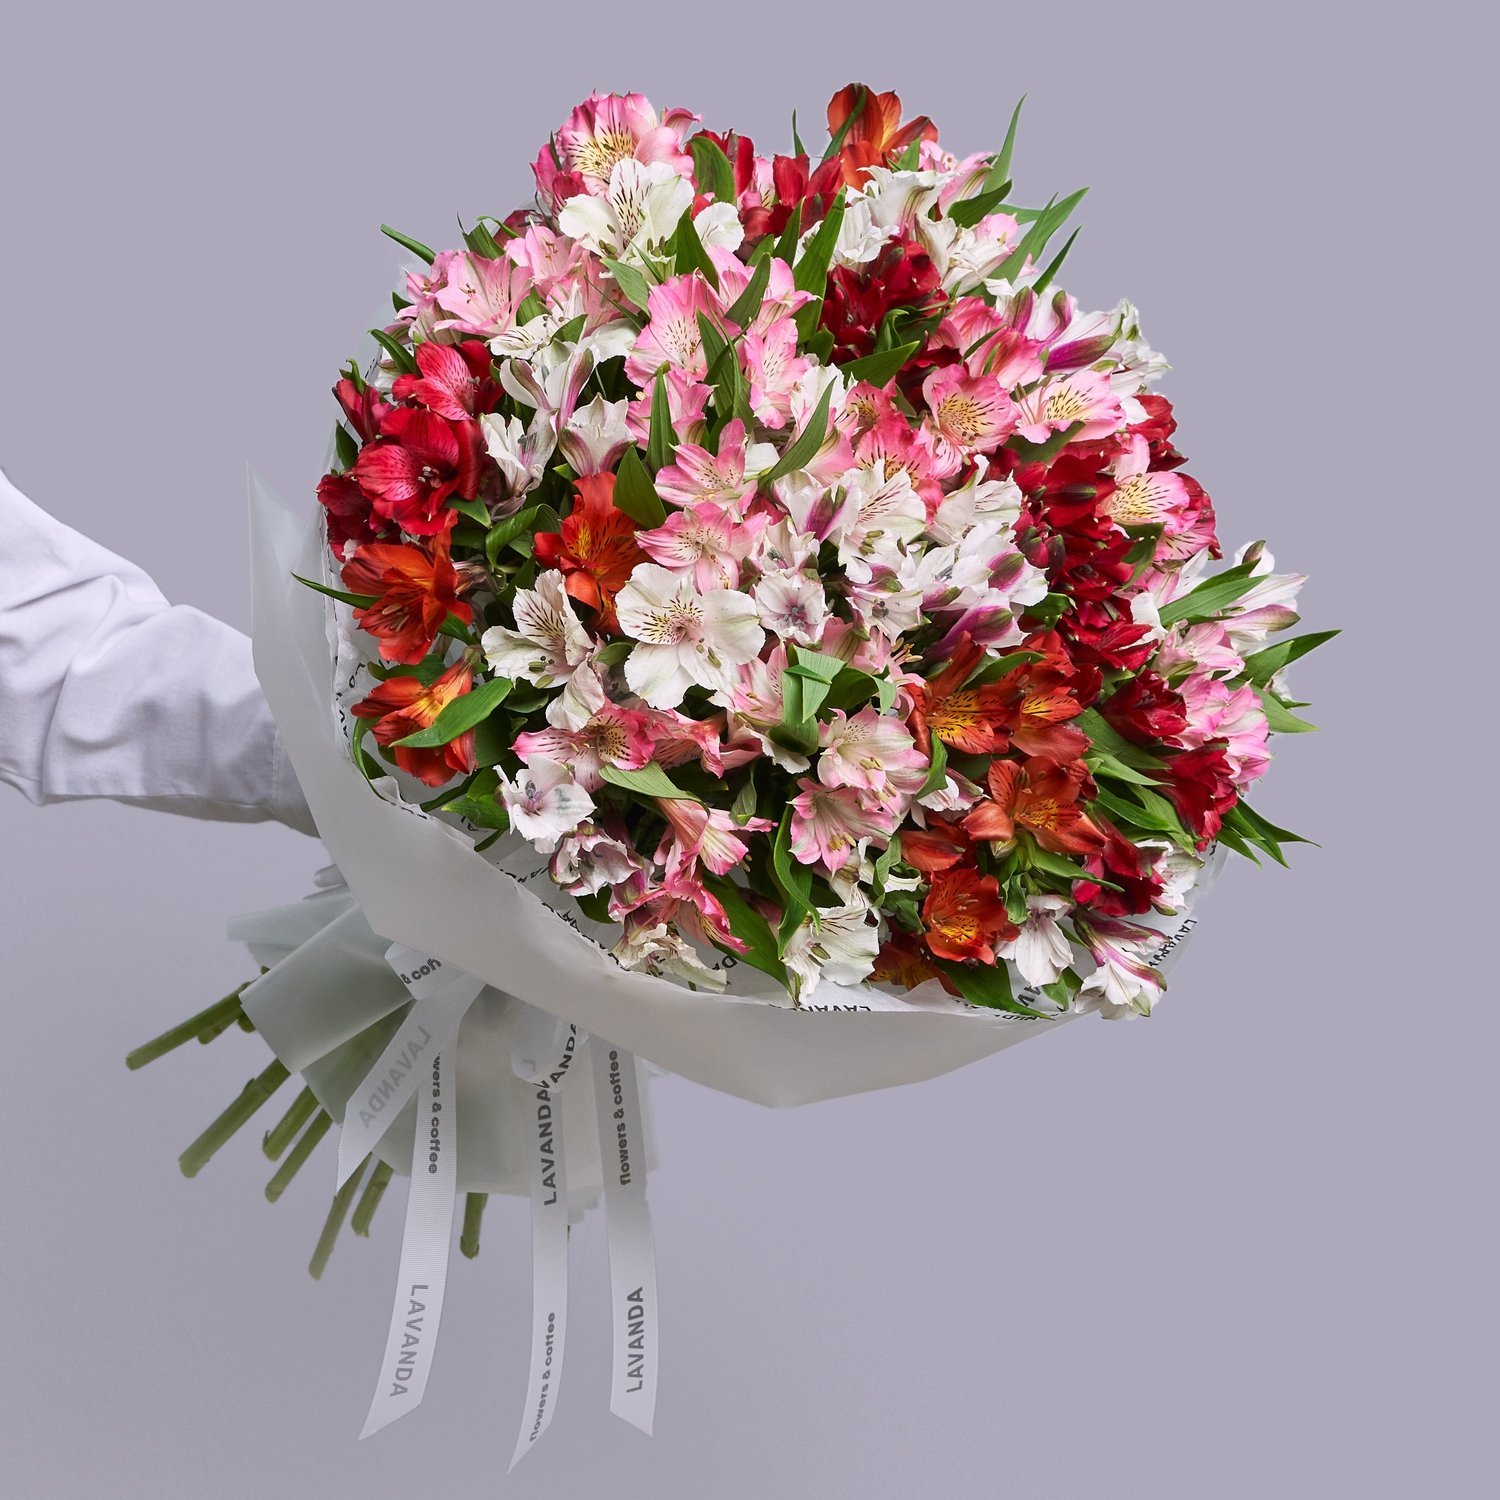 Букеты альстромерии купить недорого в Москве – заказать цветы с доставкой, цены от ₽